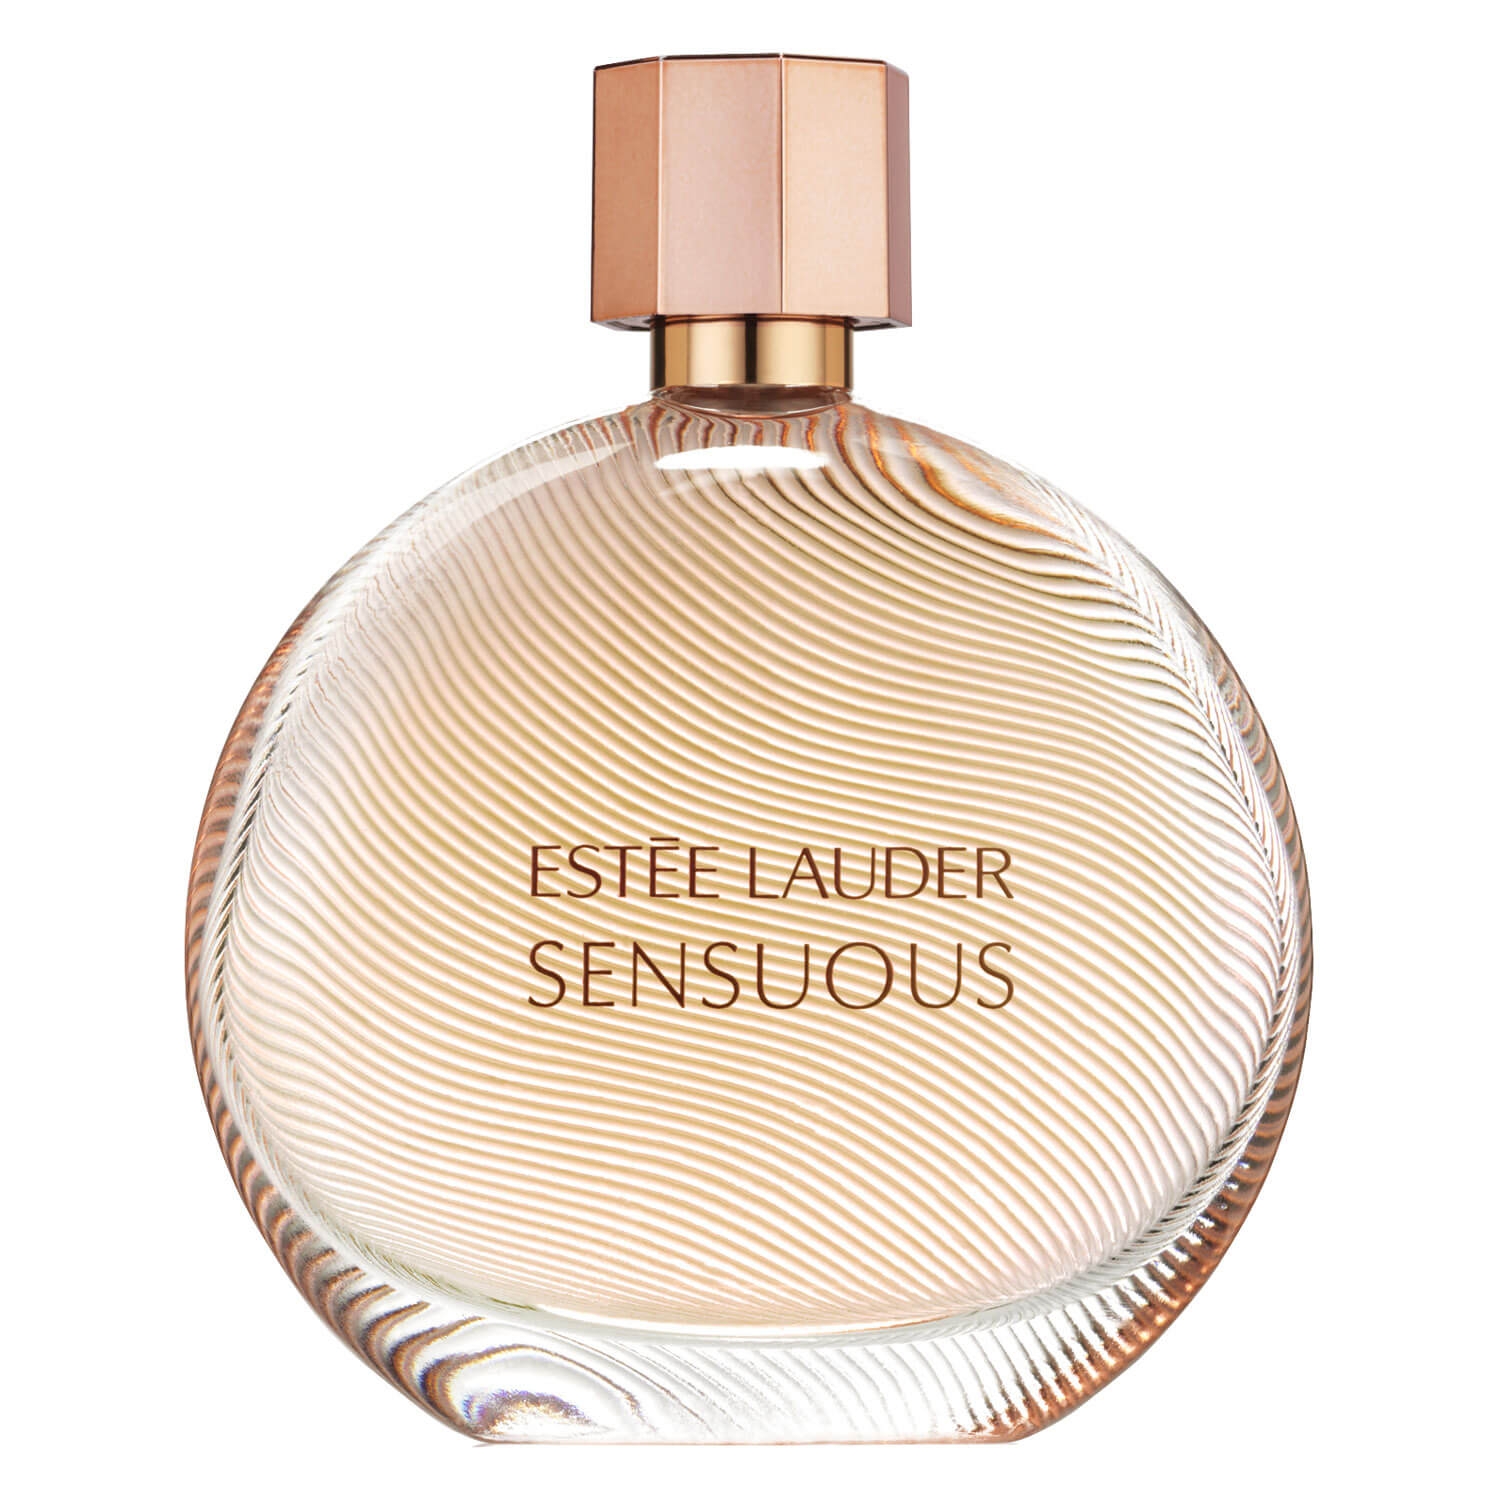 Produktbild von Sensuous - Sensuous Eau de Parfum Spray